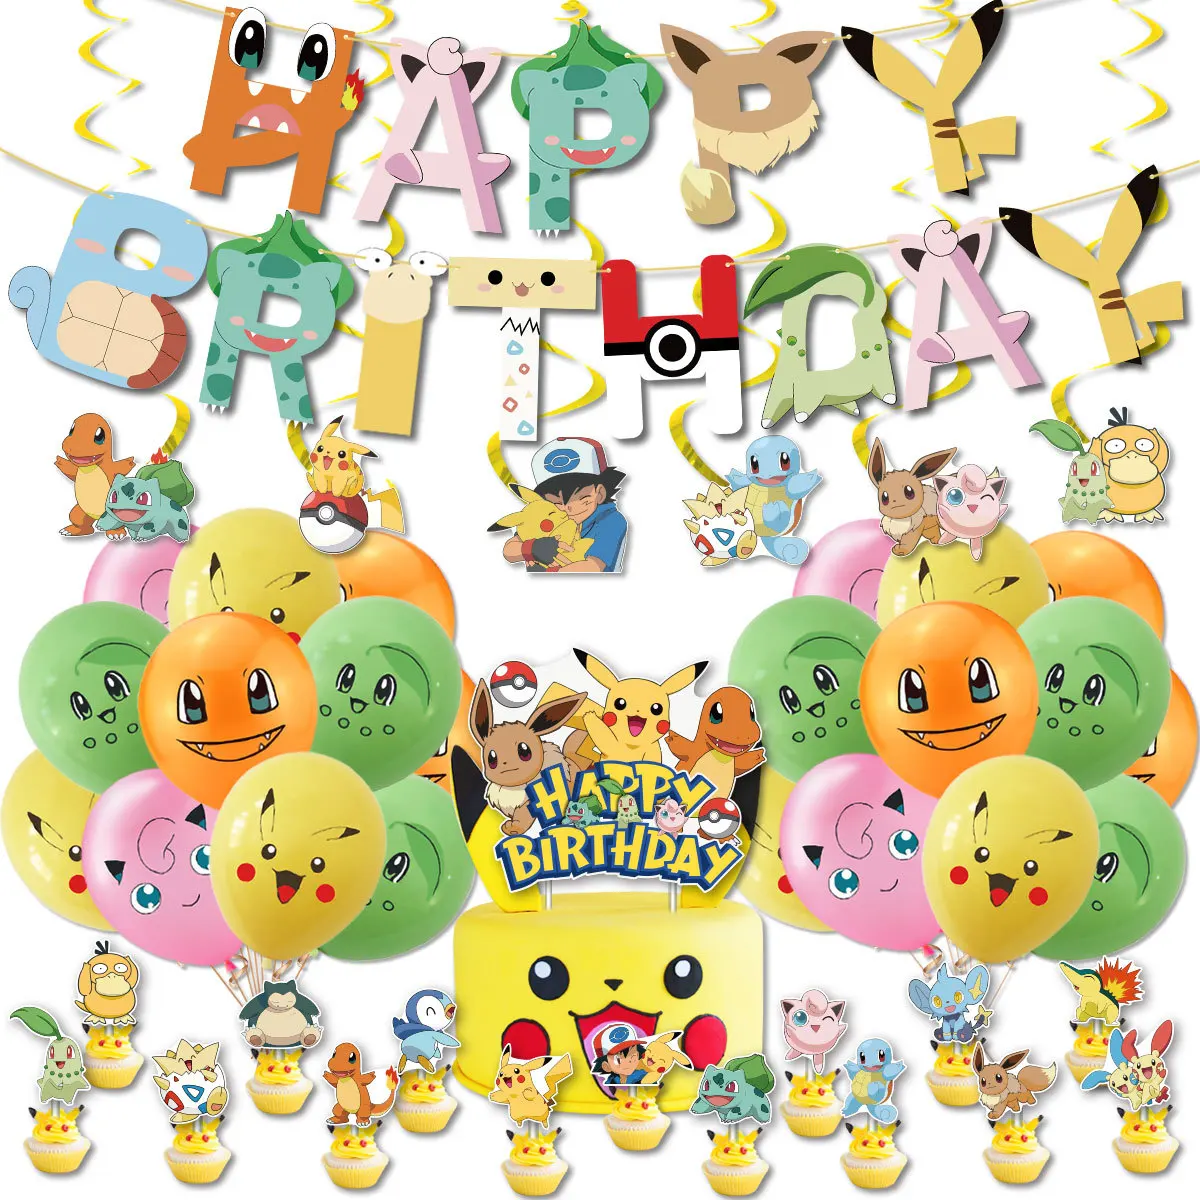 Juego de globos de Pikachuing de dibujos animados de Anime japonés, globos de aluminio de látex, pancarta de feliz cumpleaños, decoración de fiesta de elfos Pokemon, juguetes para niños, 1 Juego